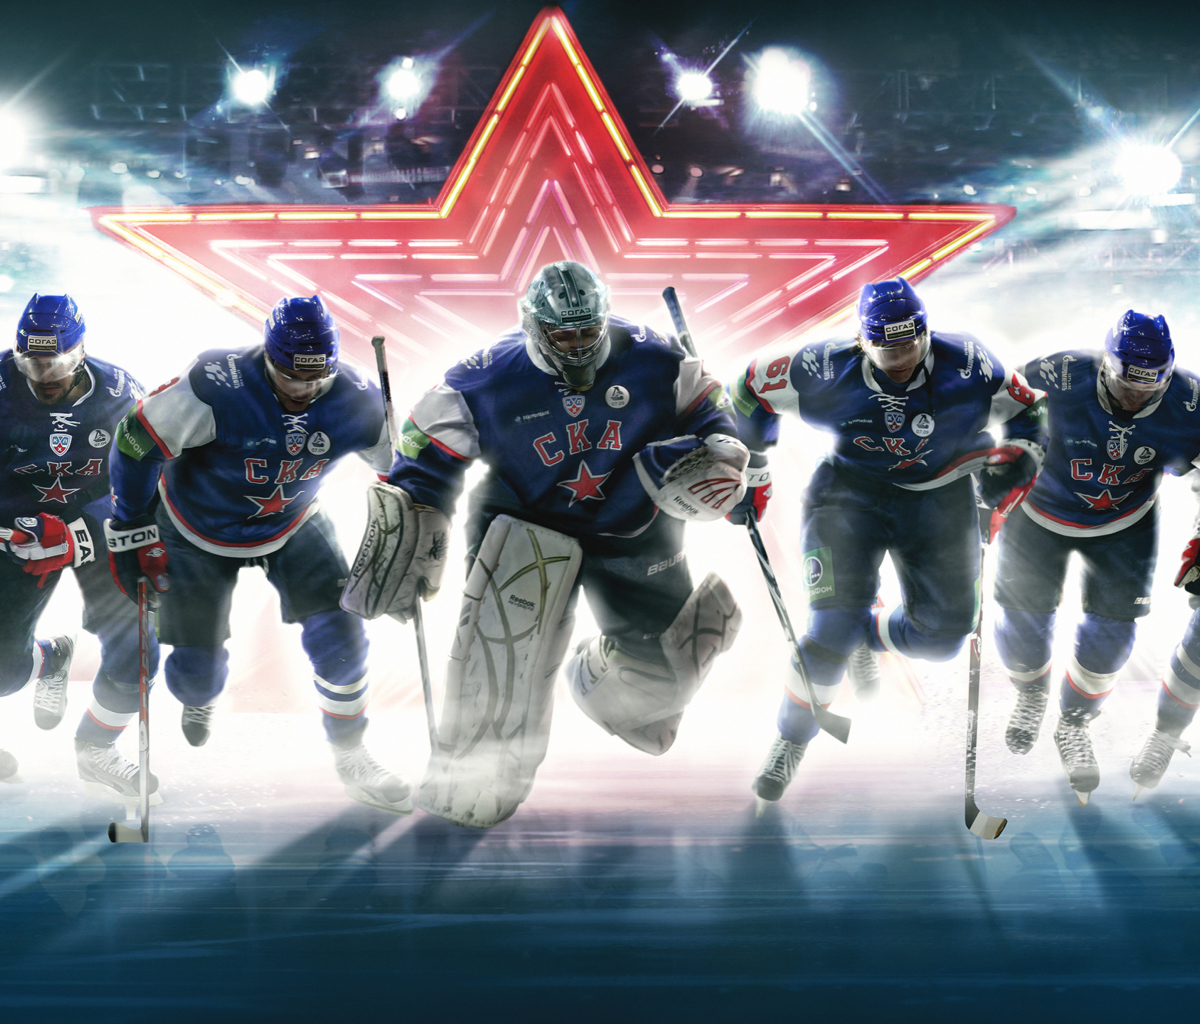 SKA Hockey Team wallpaper 1200x1024